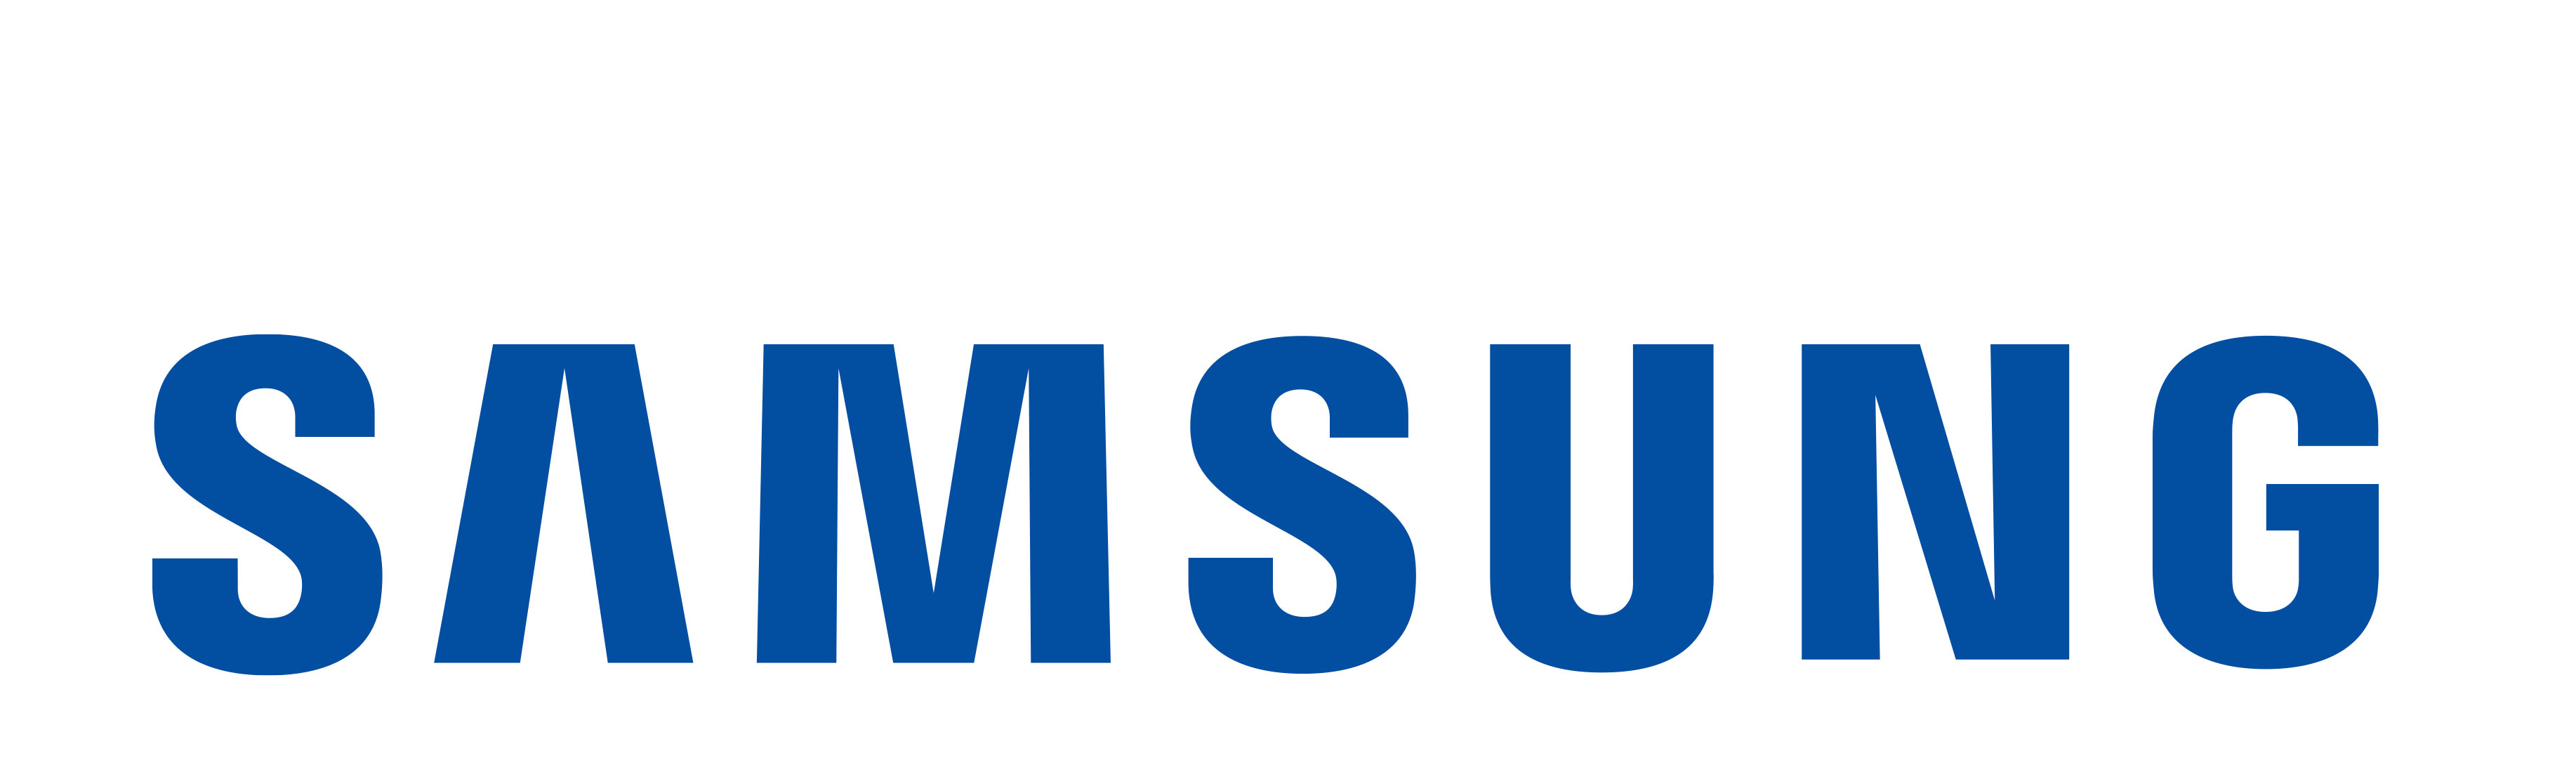 Sao chép thẻ từ khoá điện tử Samsung | Khóa cổng tự động